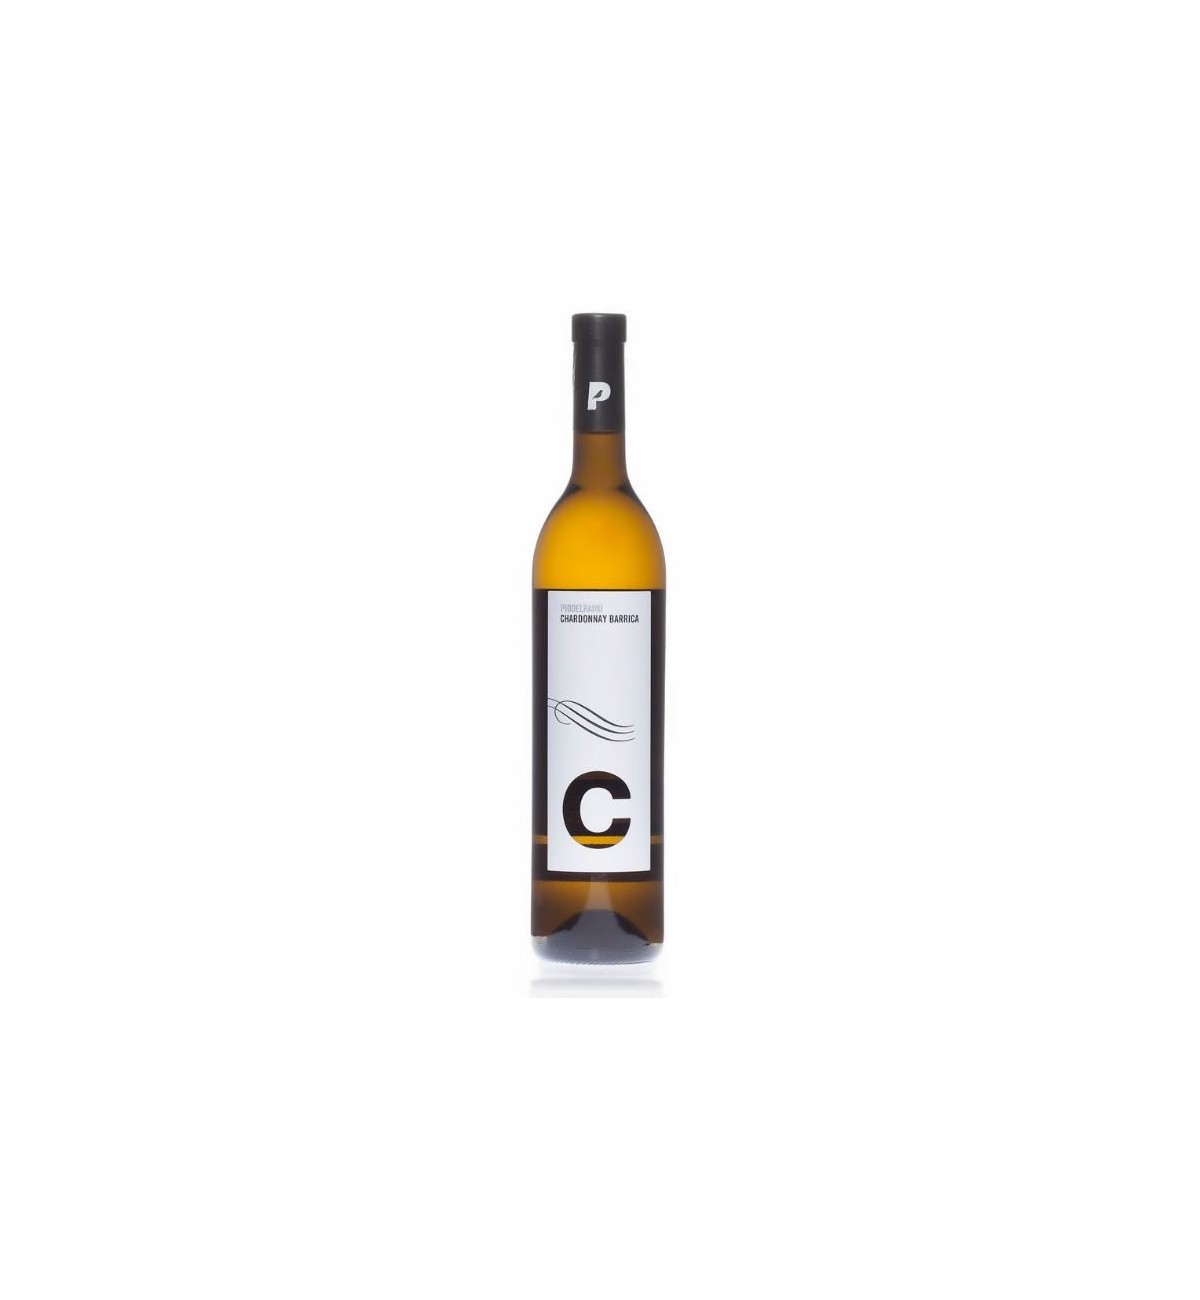 Blanco Chardonnay Barrica - Pío del Ramo - DOP Jumilla - Muchosvinos.com